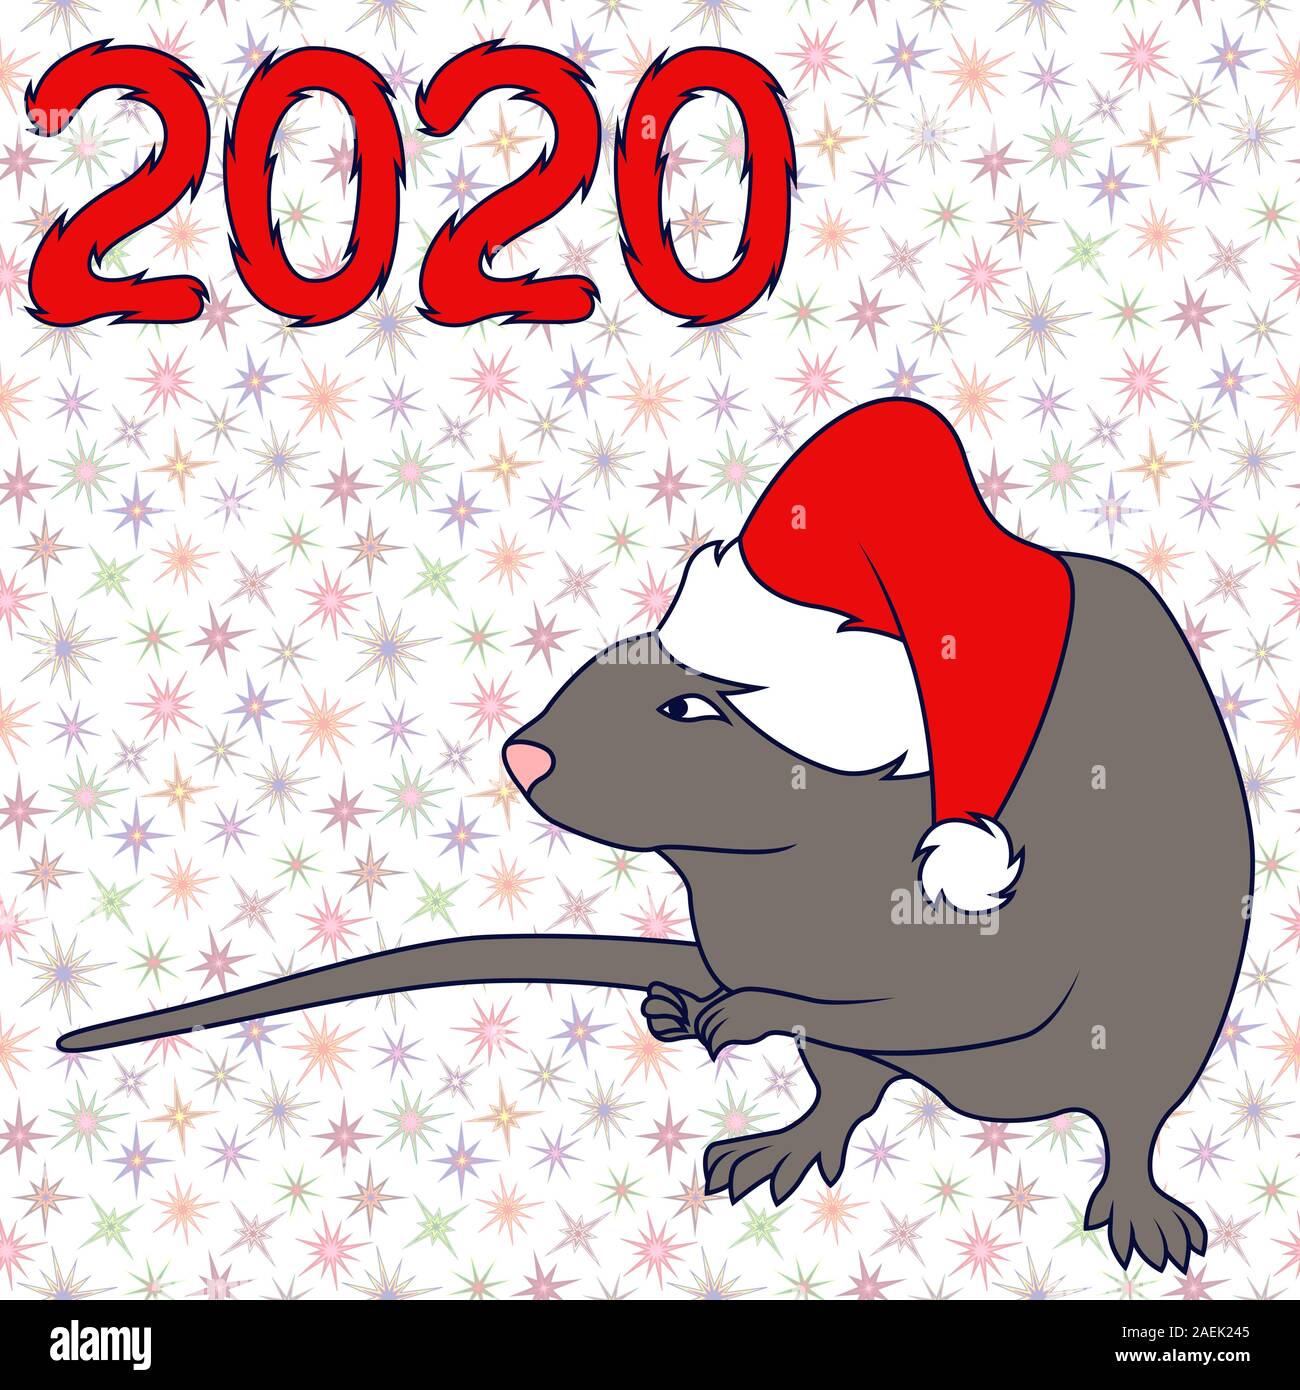 Chinesisches Tierzeichen Ratte in Santa Hut, Symbol für das Neue Jahr auf dem Östlichen Kalender, handgezeichnete Abbildung auf dem gedeckten Muster mit Stern, Hintergrund werden kann Stock Vektor